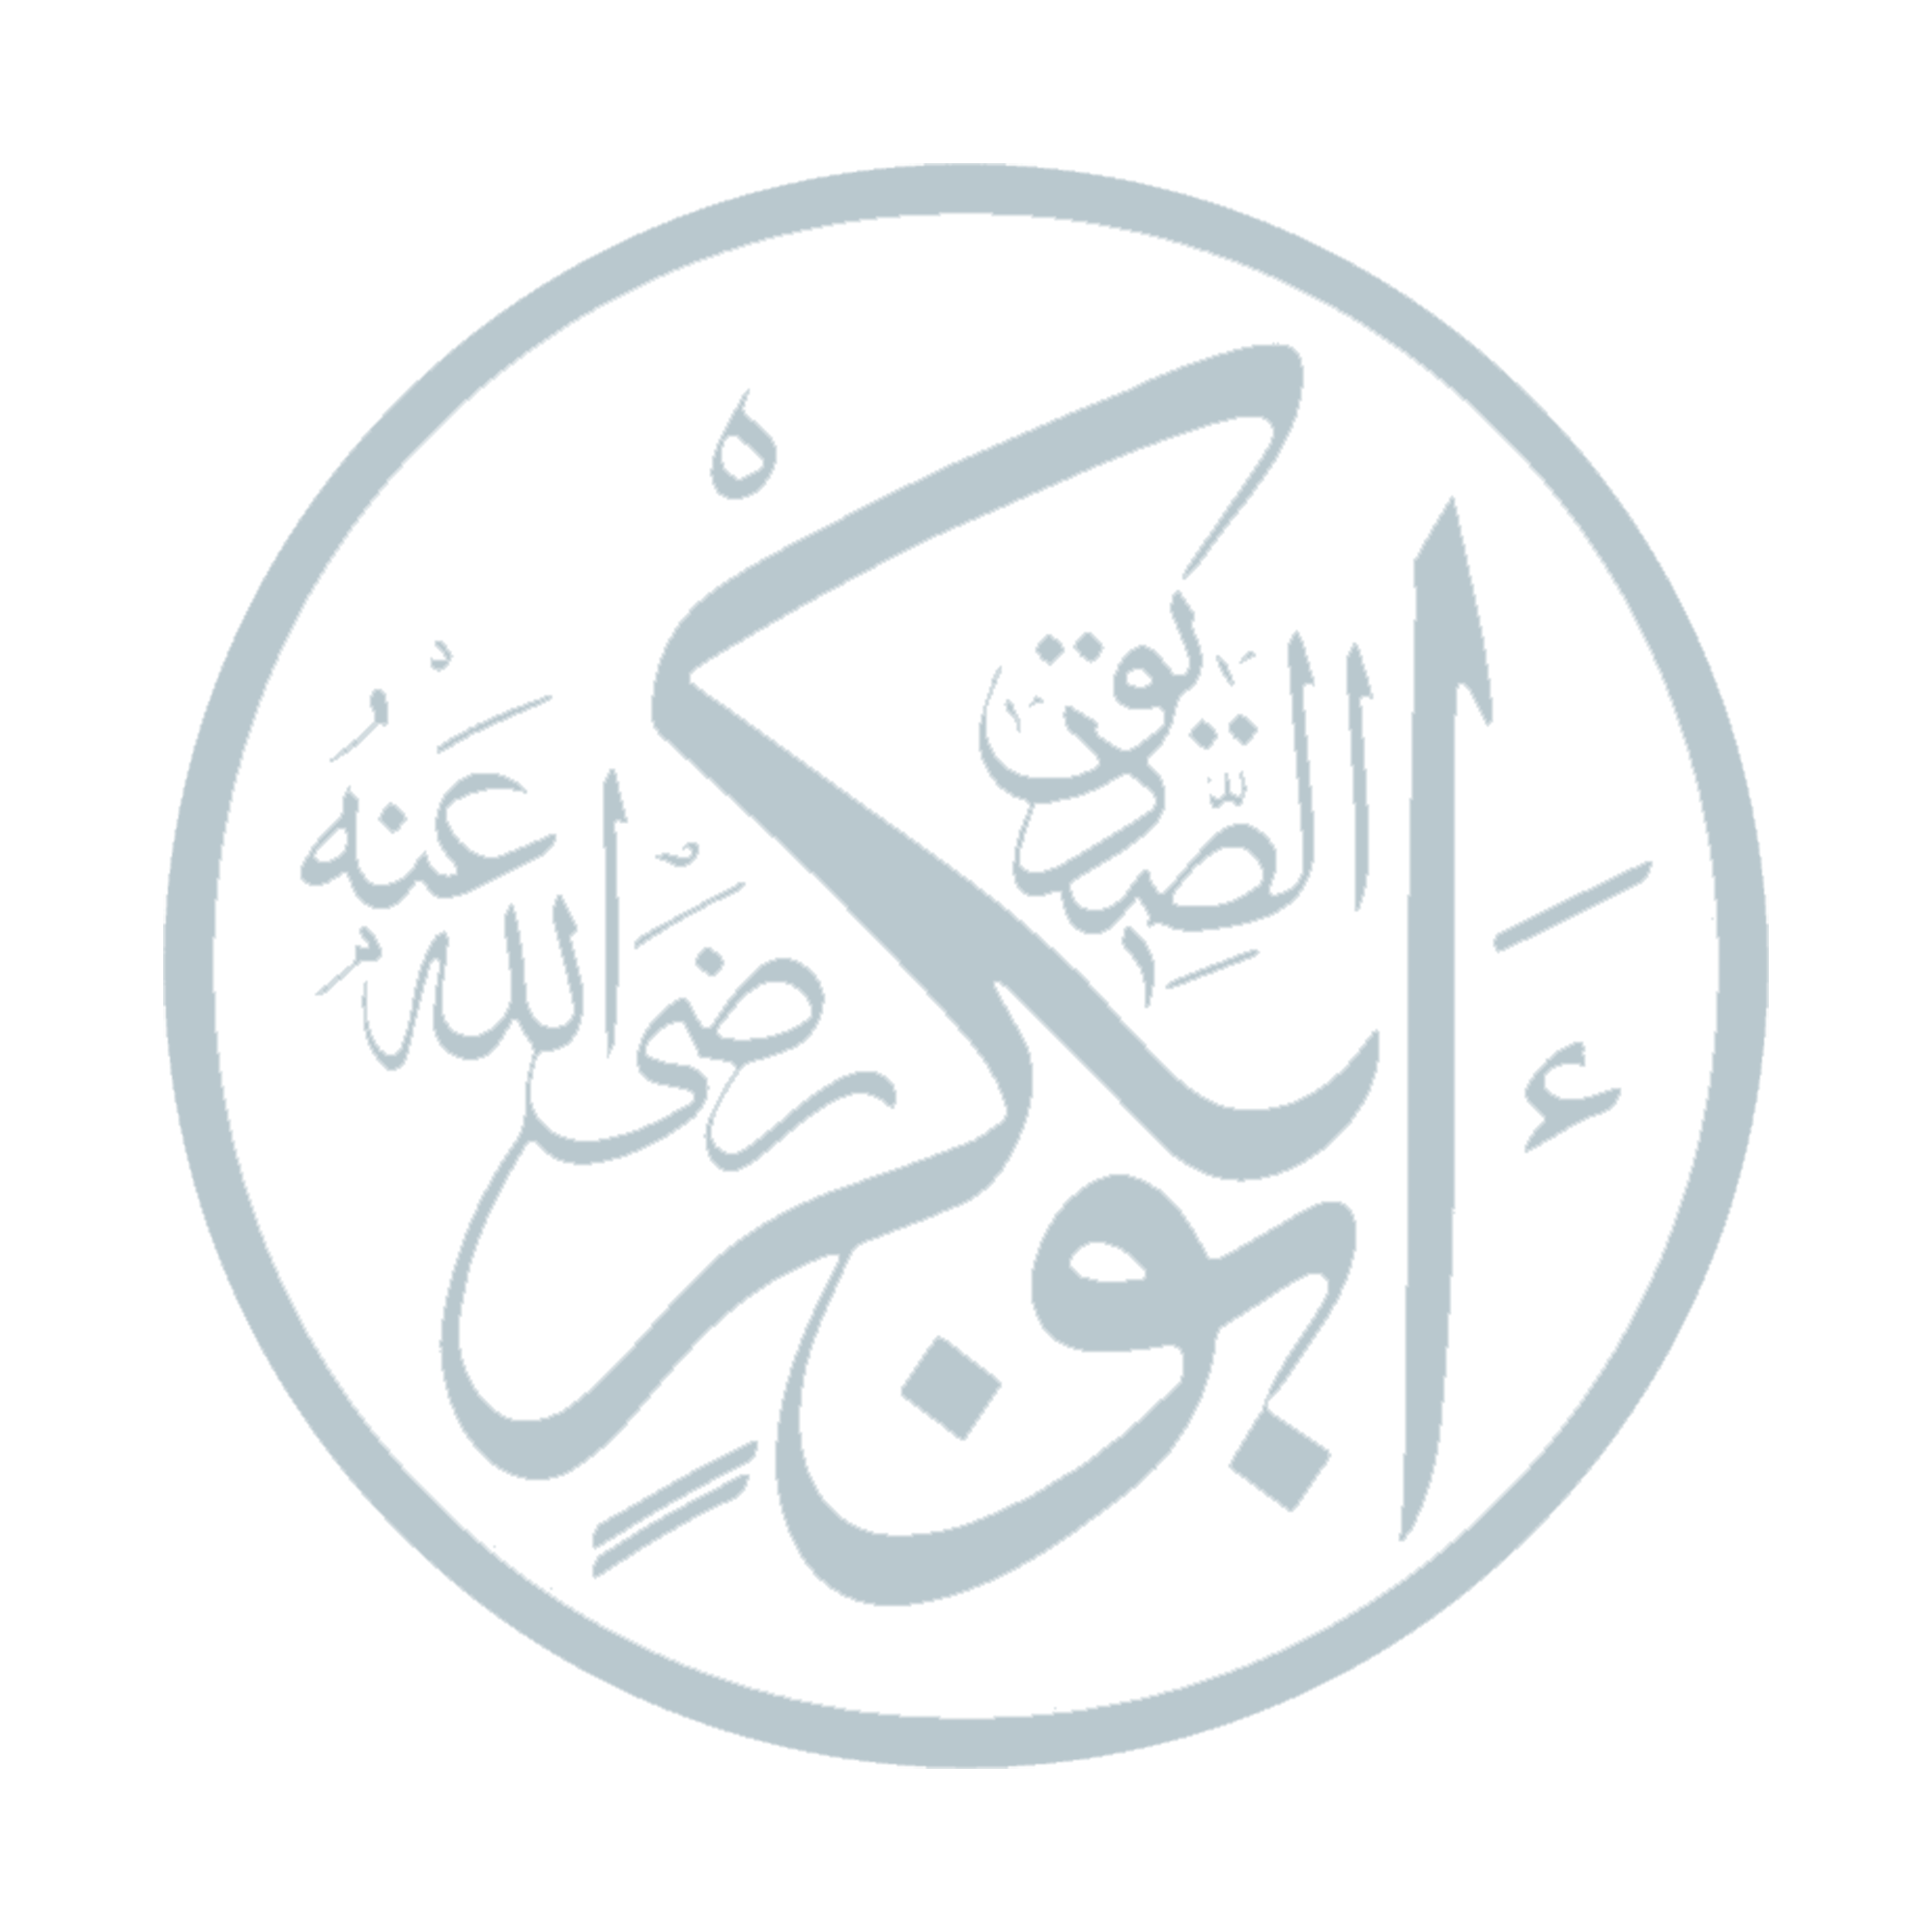 Hazrat Abu Bakr (ra)